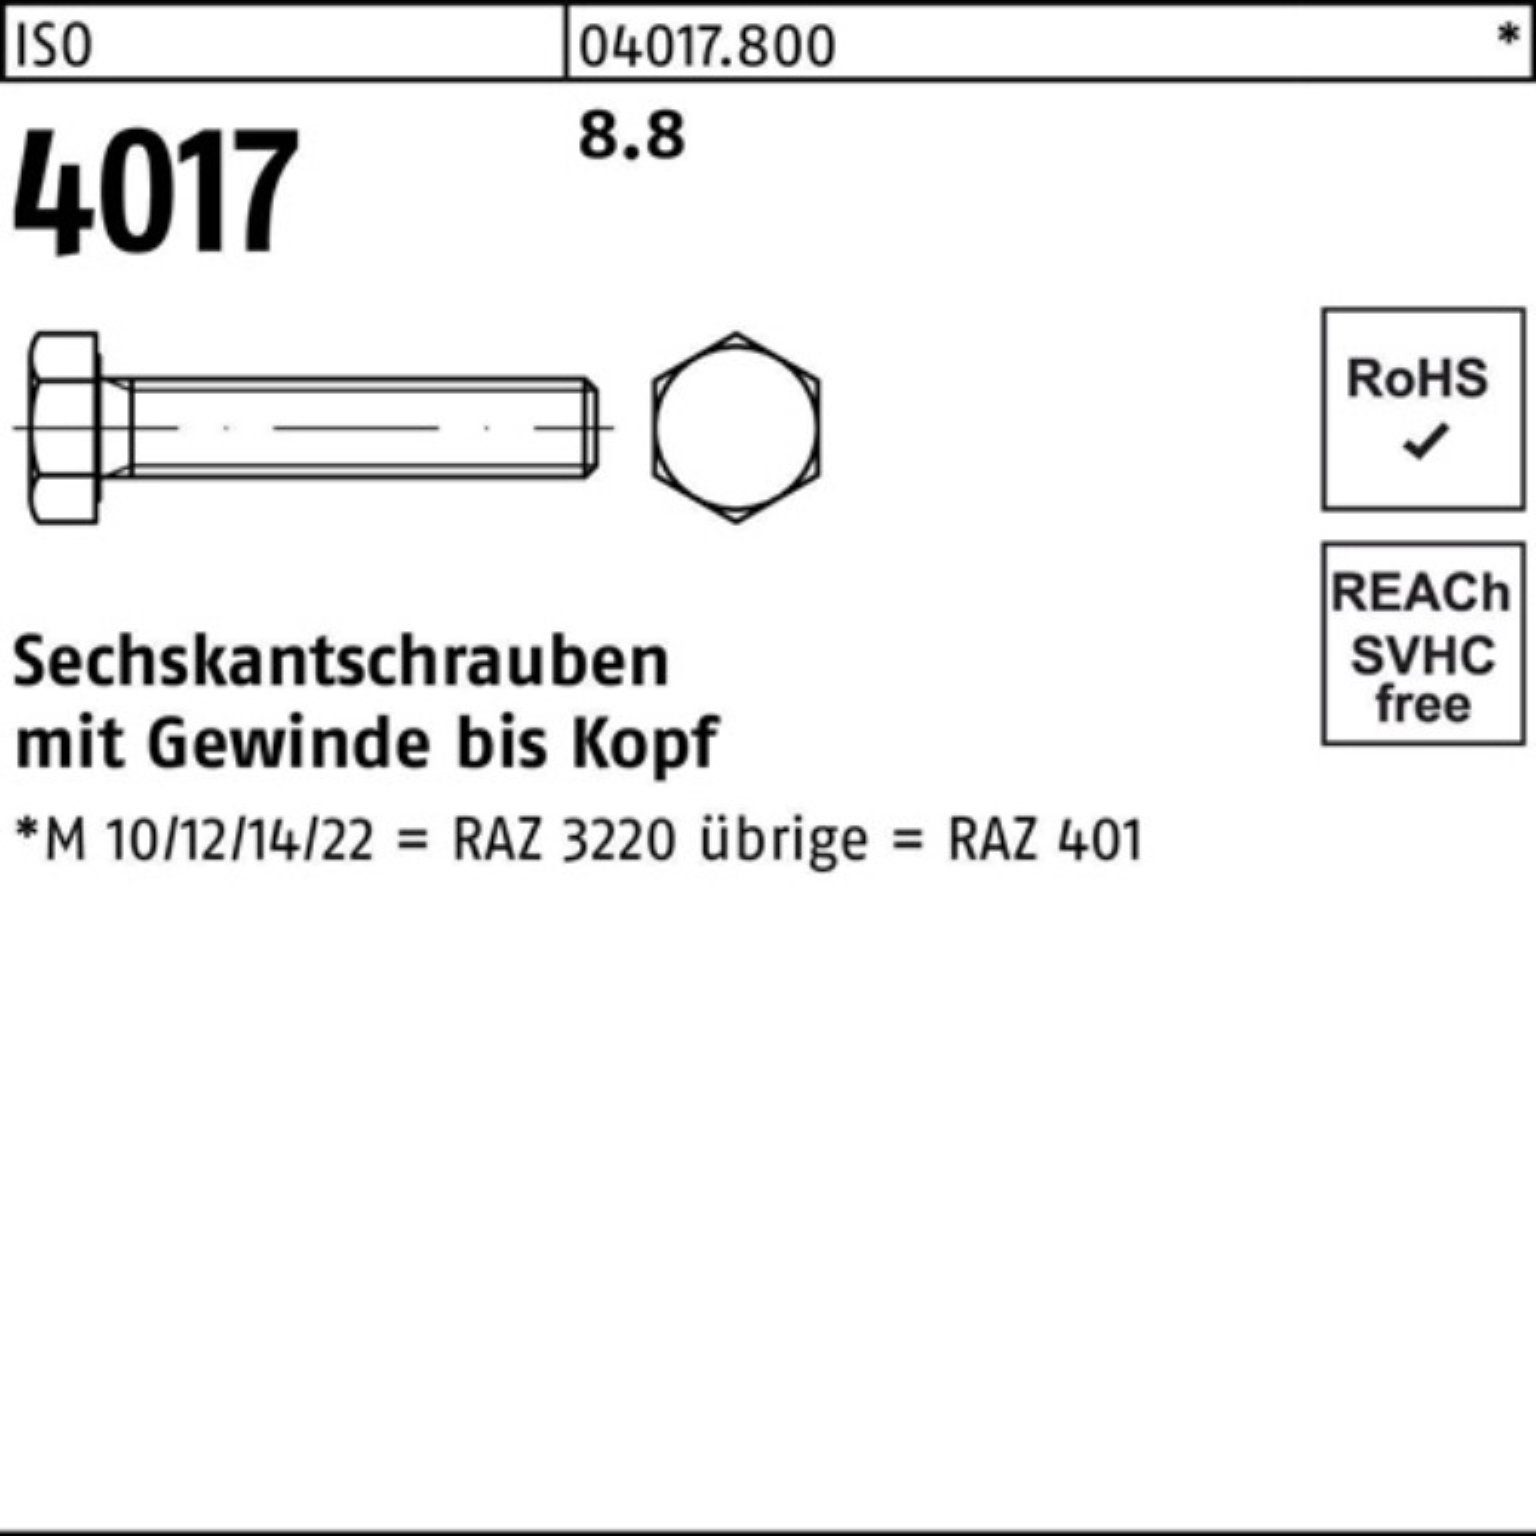 Sechskantschraube Sechskantschraube 4017 Pack 100er Bufab VG M30x 130 ISO ISO 401 8.8 1 Stück